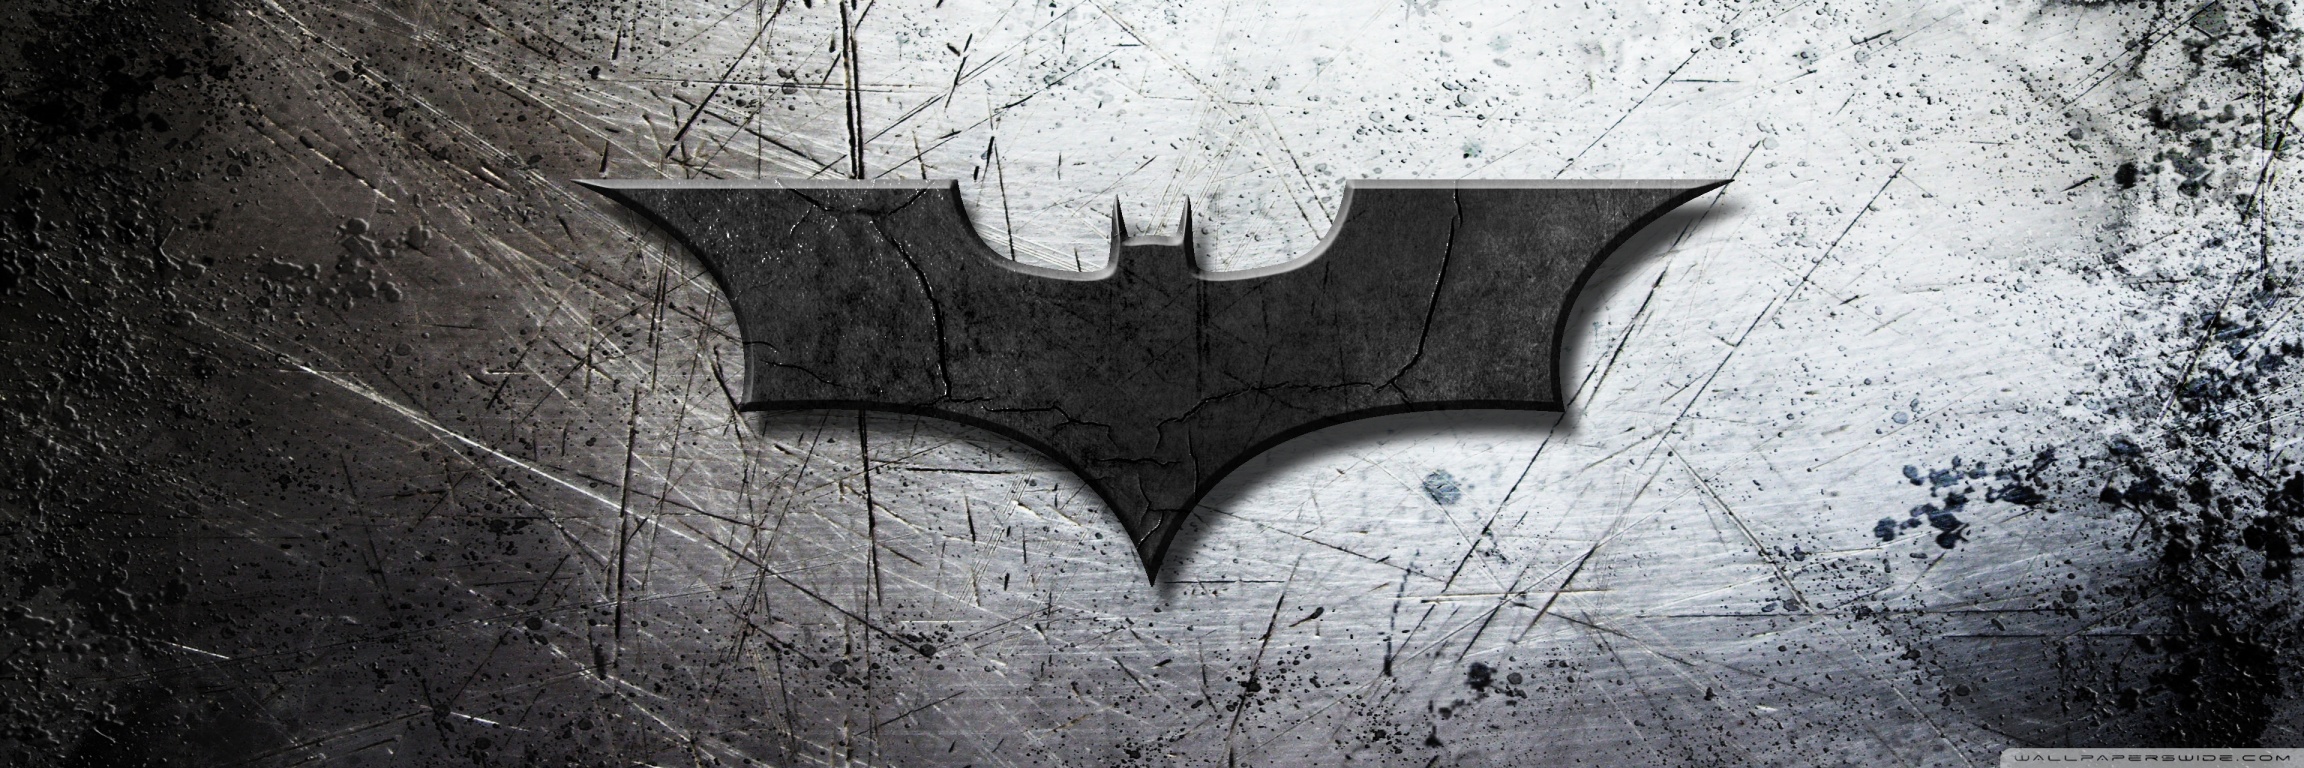 batman_logo-wallpaper-1366x768  Batman wallpaper, Computer